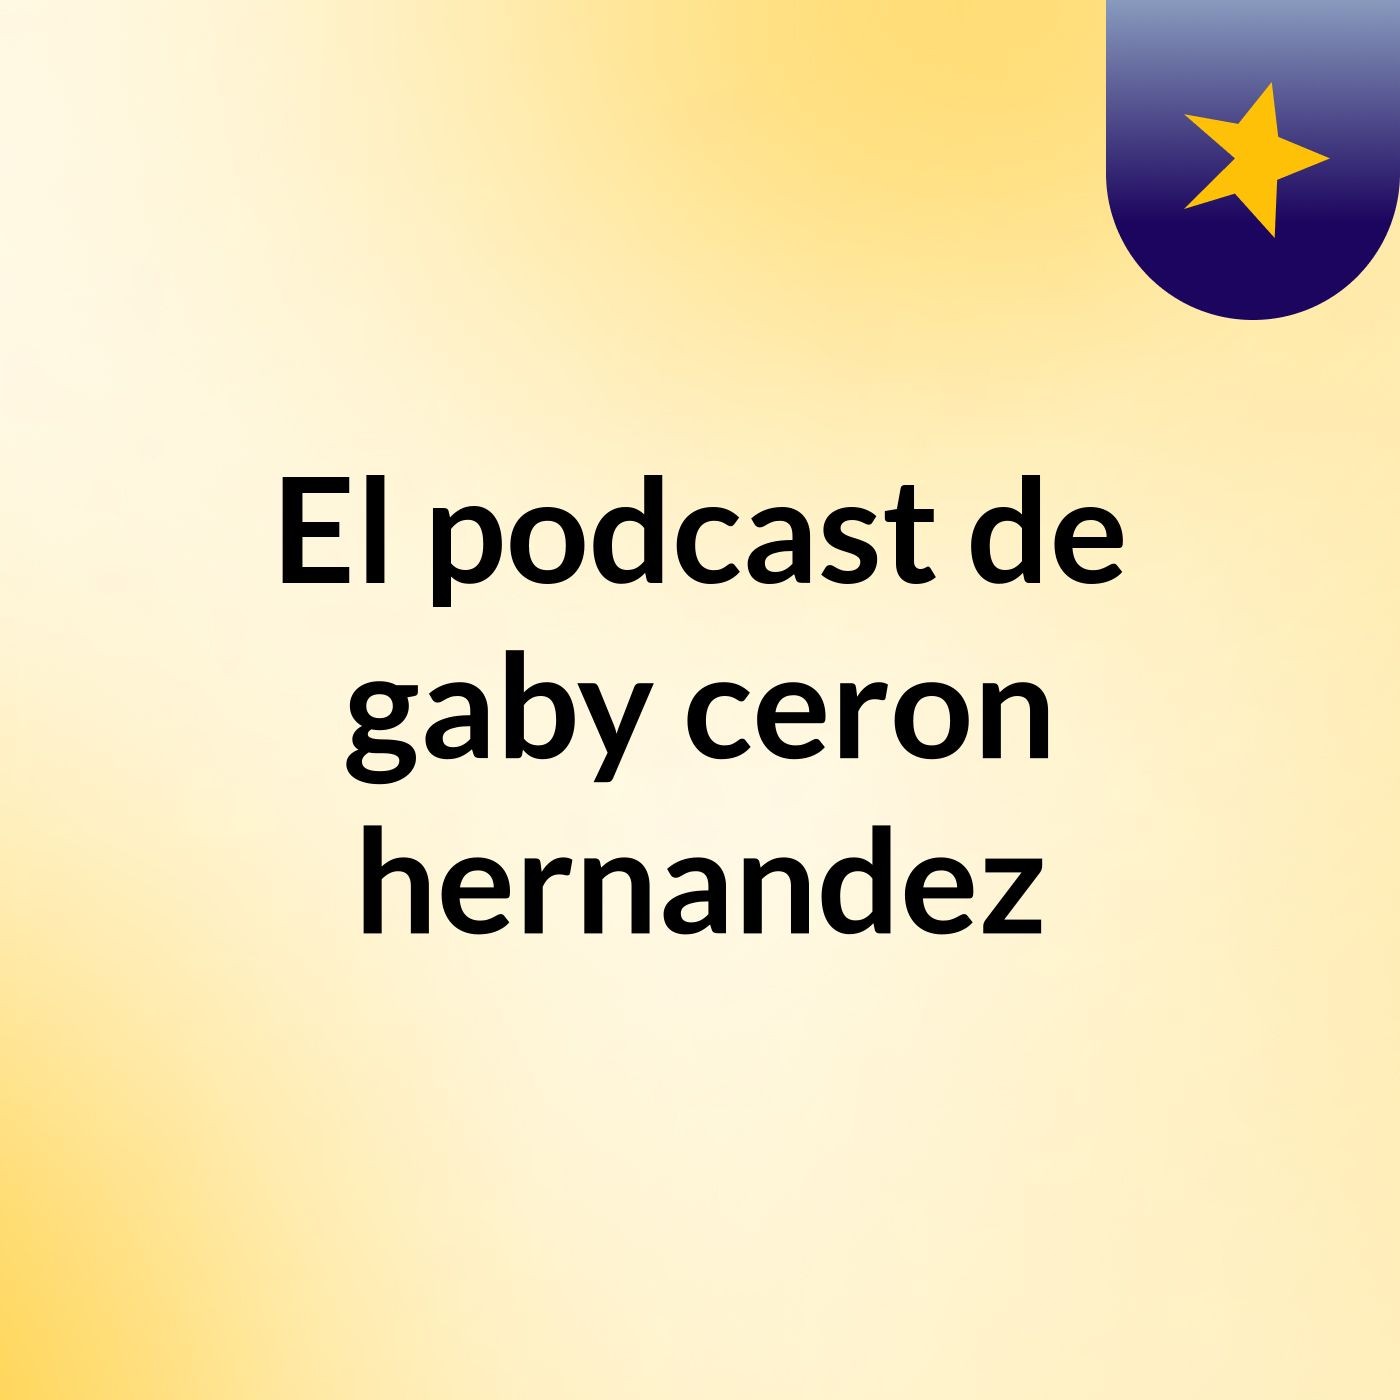 Episodio 2 - El podcast de gaby ceron hernandez